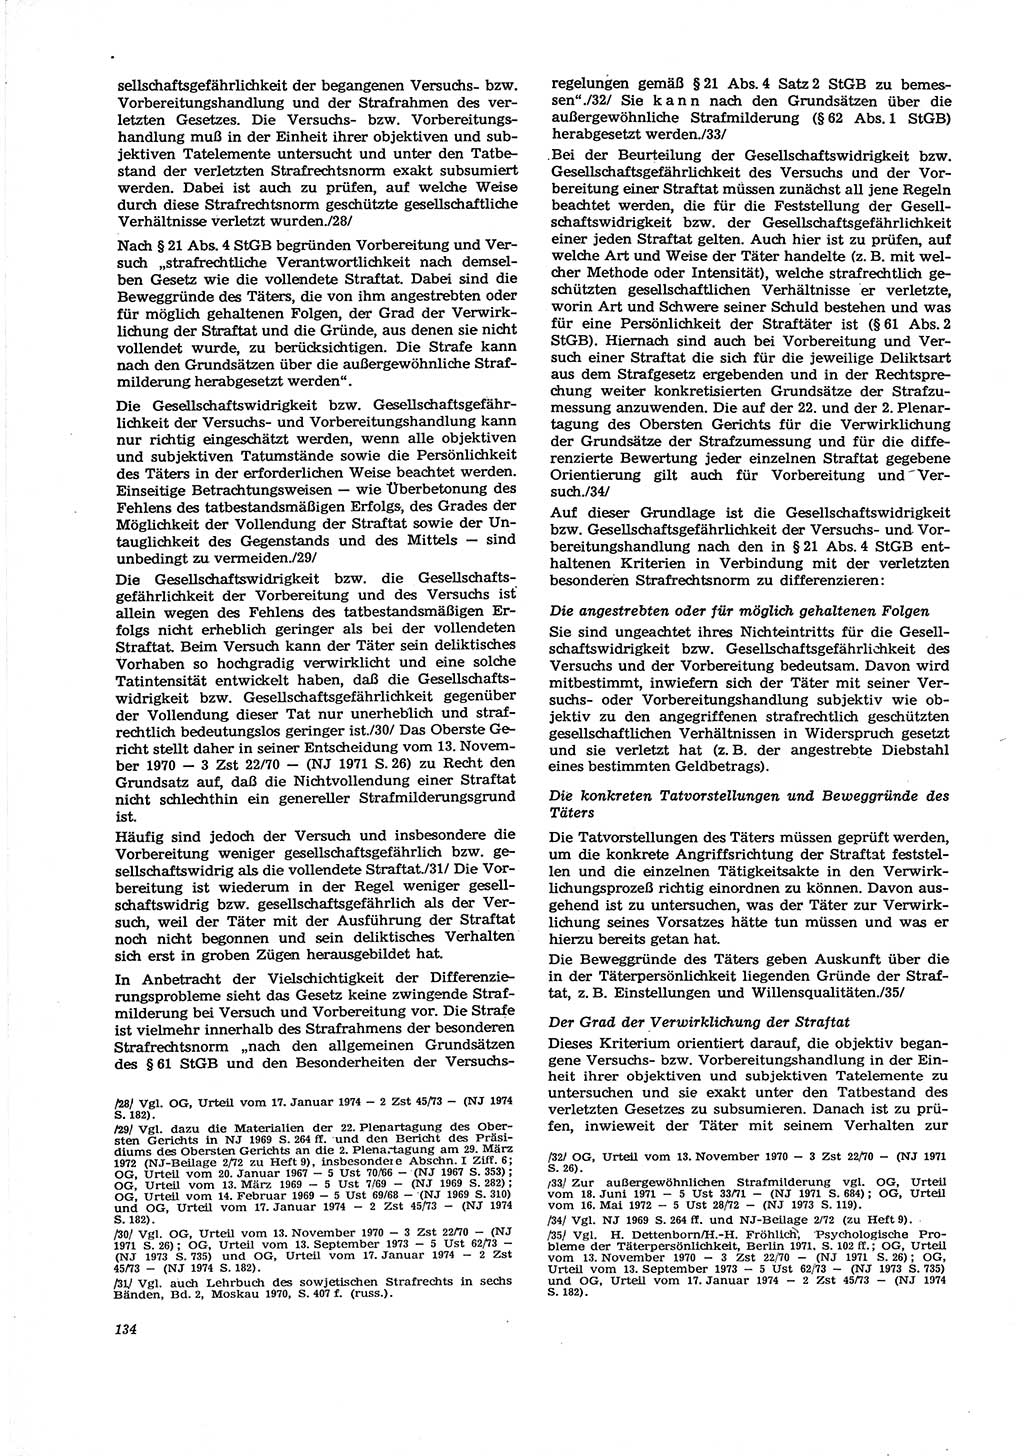 Neue Justiz (NJ), Zeitschrift für Recht und Rechtswissenschaft [Deutsche Demokratische Republik (DDR)], 29. Jahrgang 1975, Seite 134 (NJ DDR 1975, S. 134)